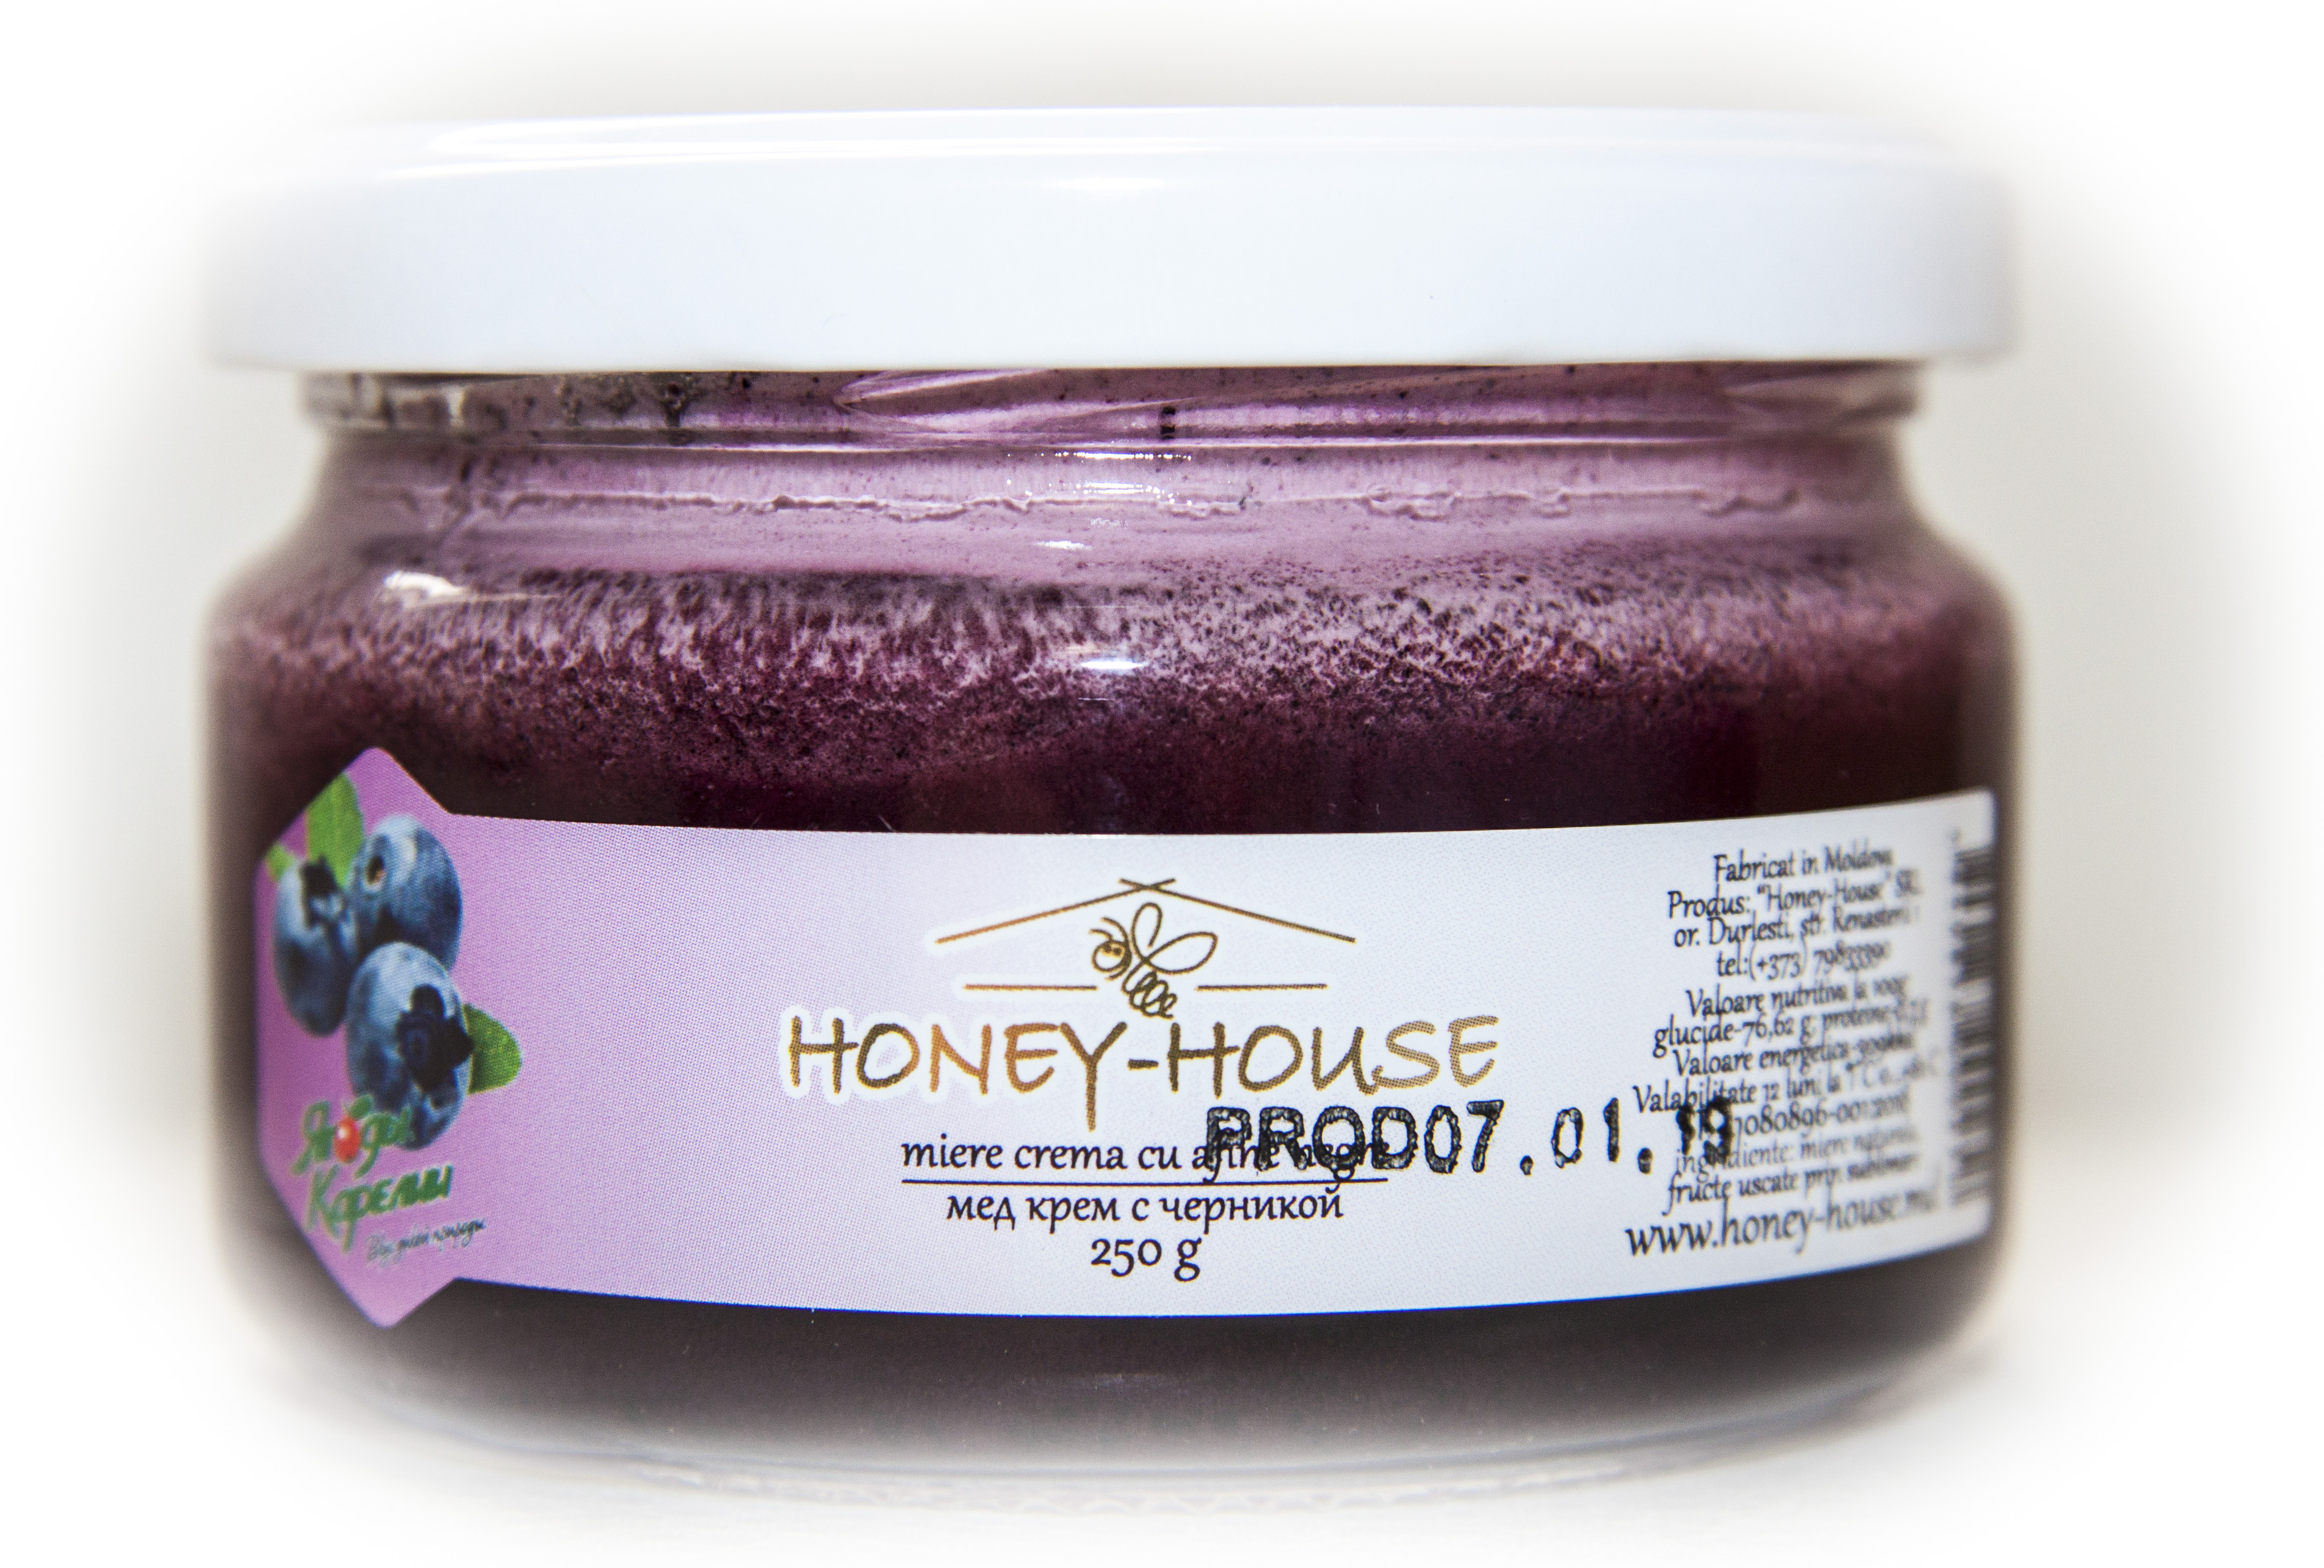 Honey cream with blueberries